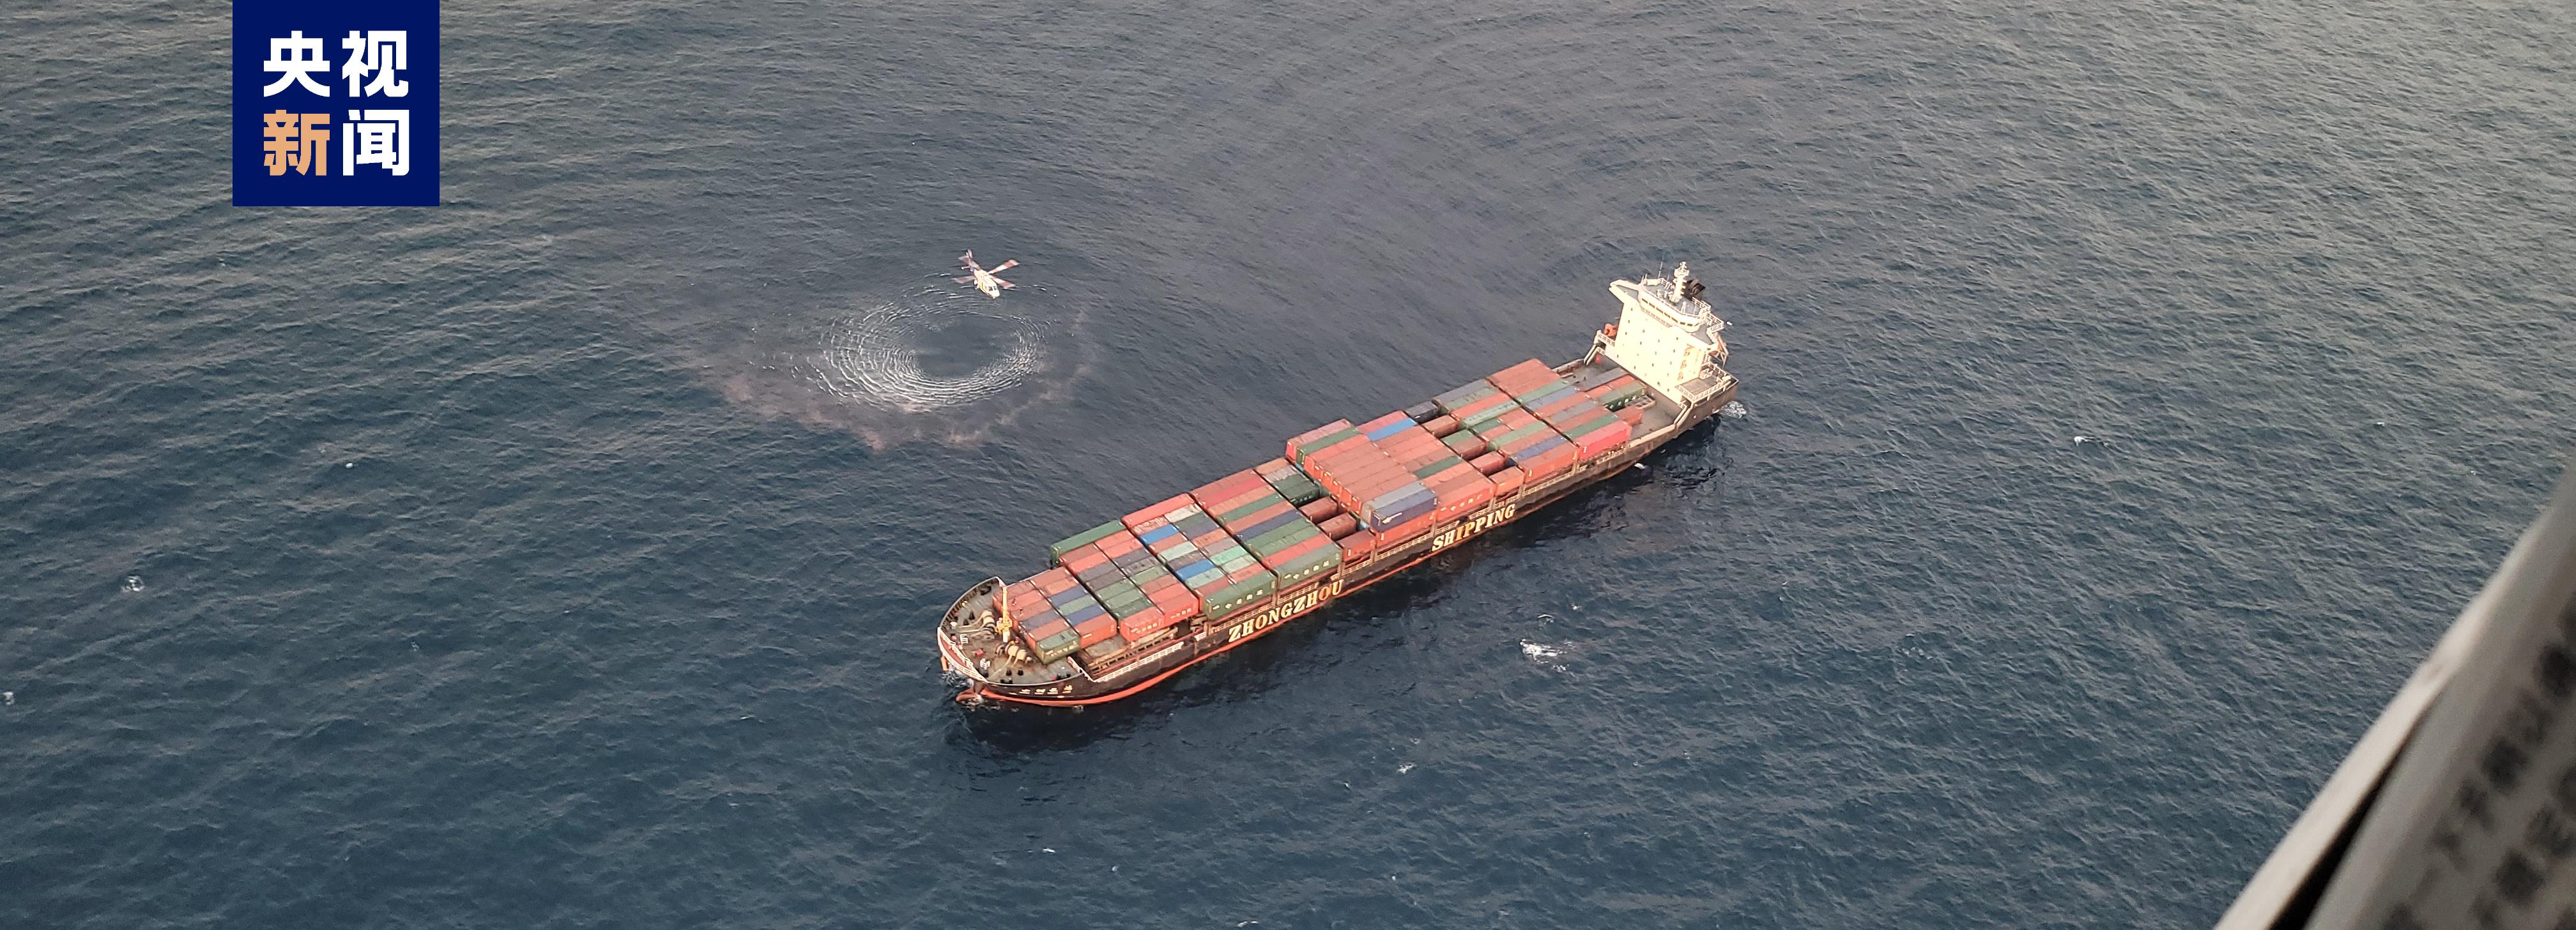 福建海域一集装箱船机舱失火 19名被困船员全部获救